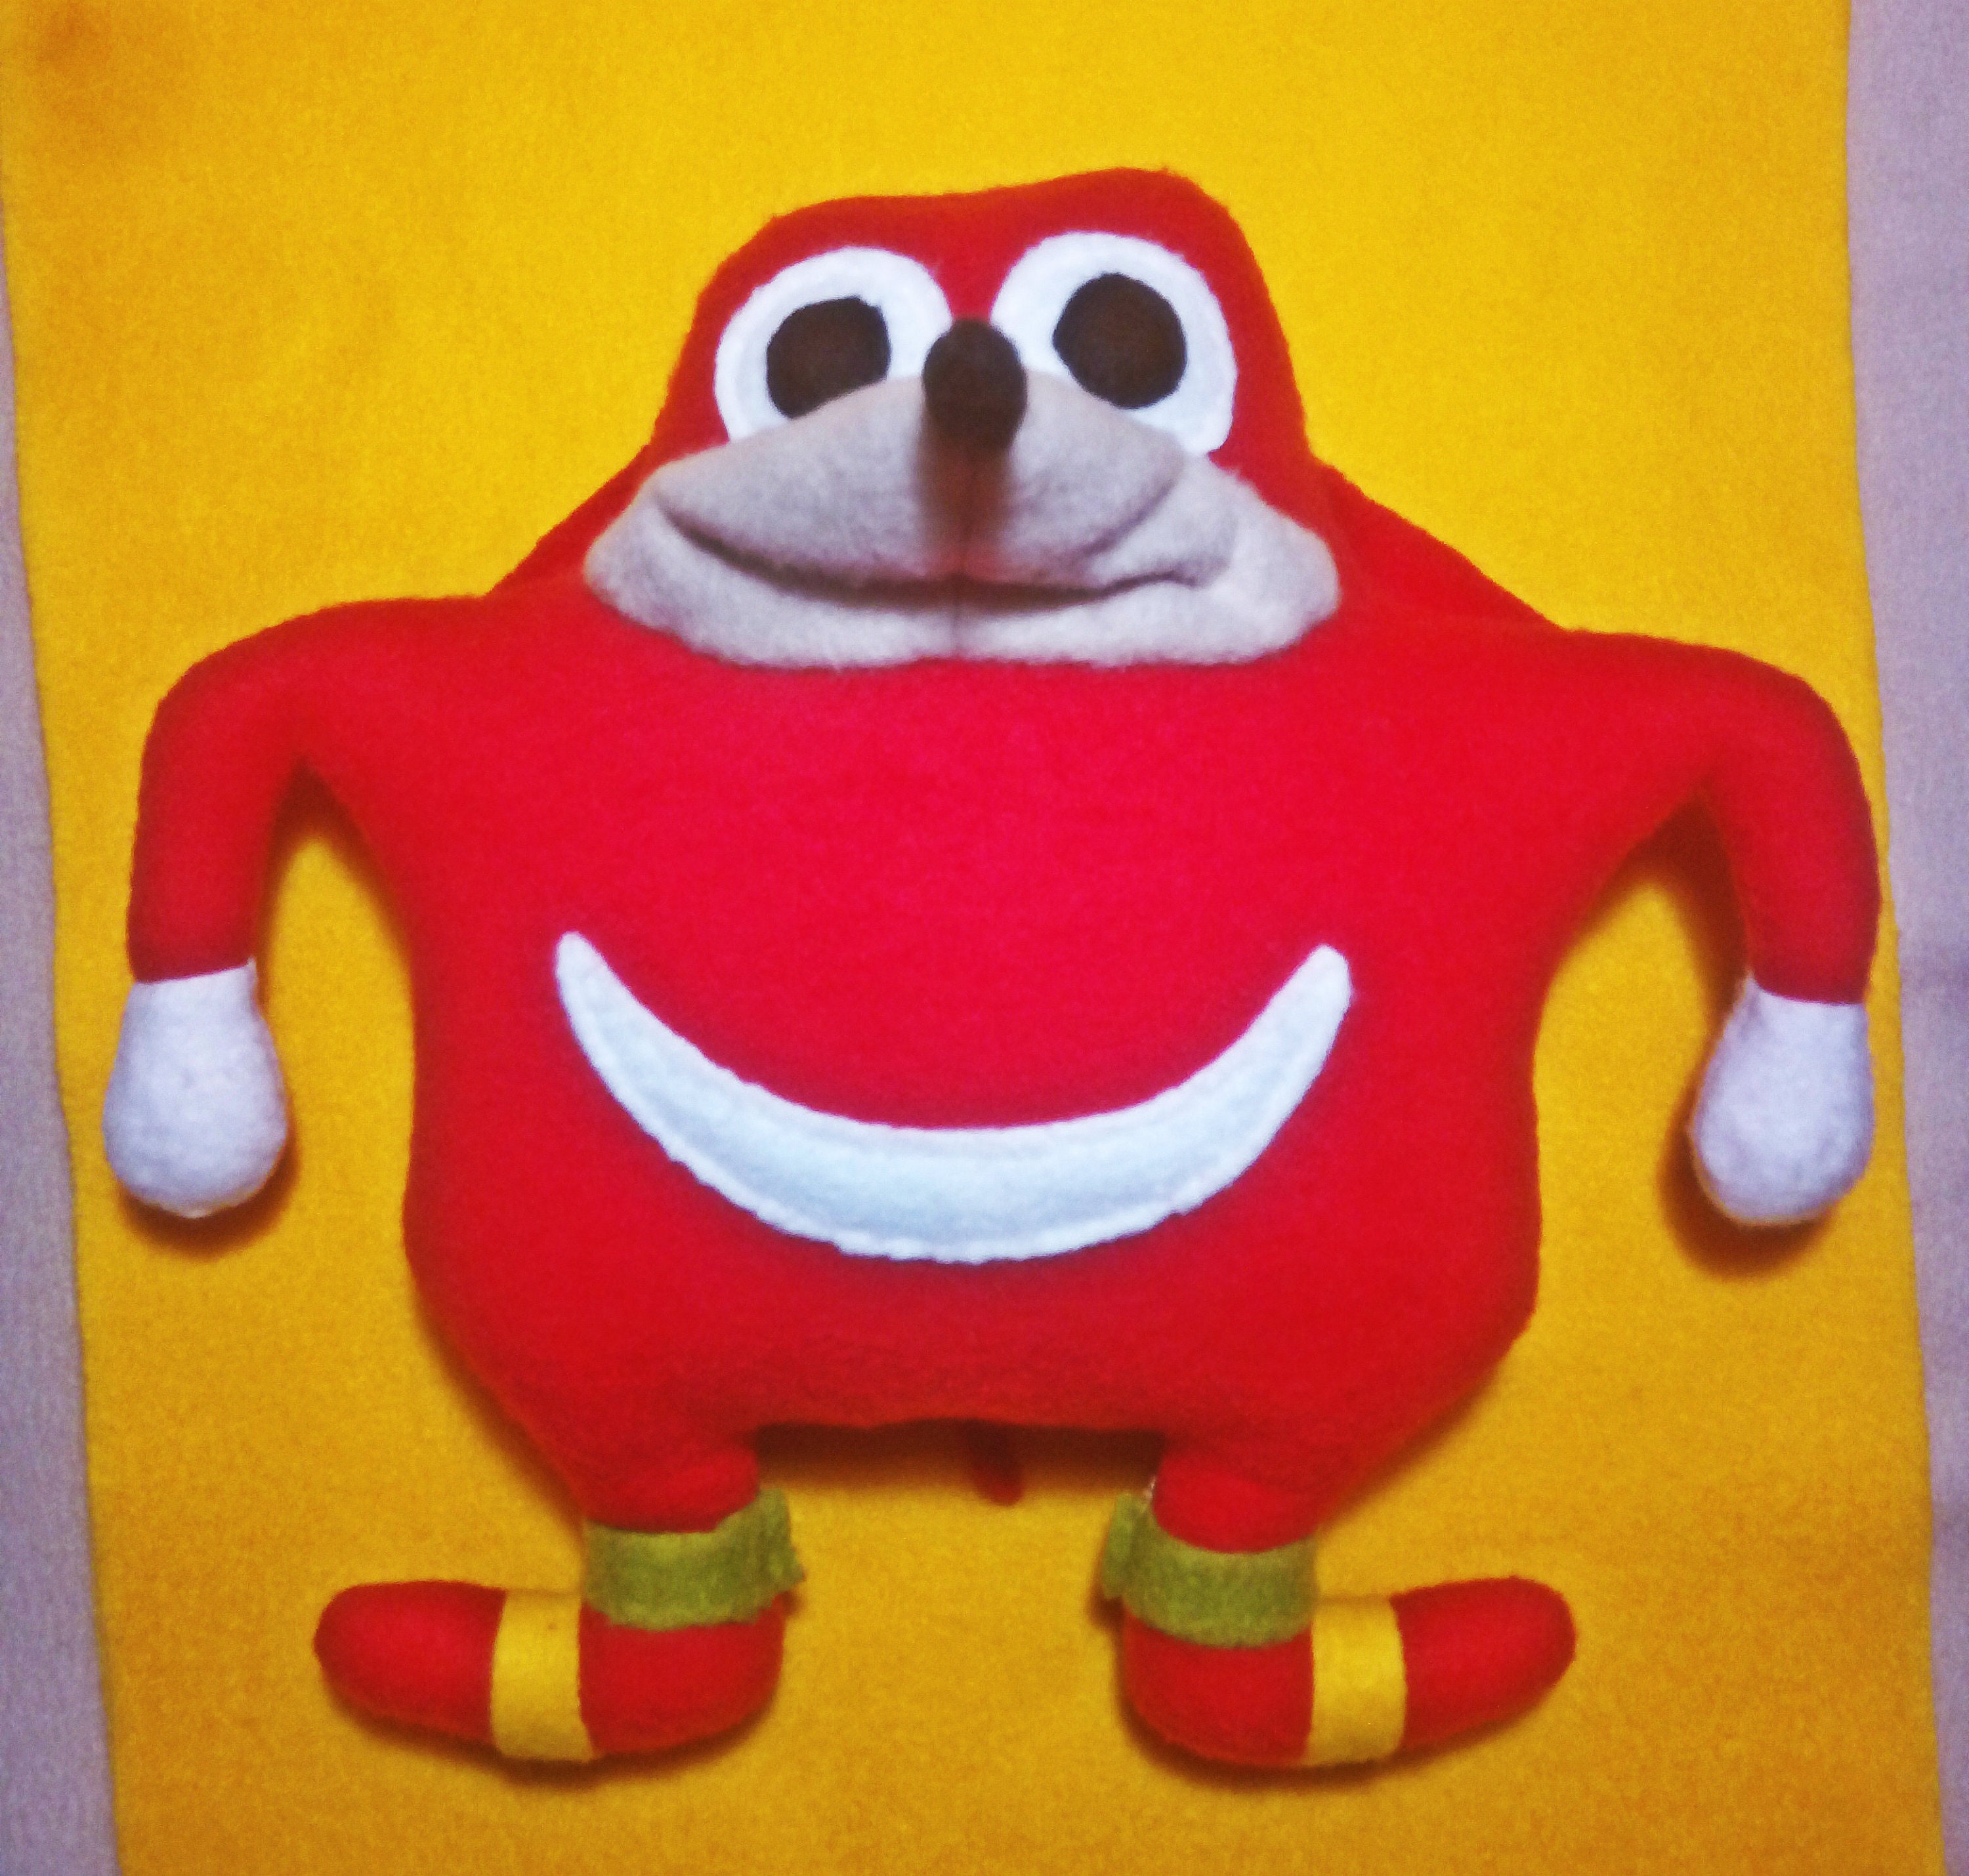 Ugandan Knuckles Plush Toy Red HandMade Uganda Do You Know De Way Sonic Mem...